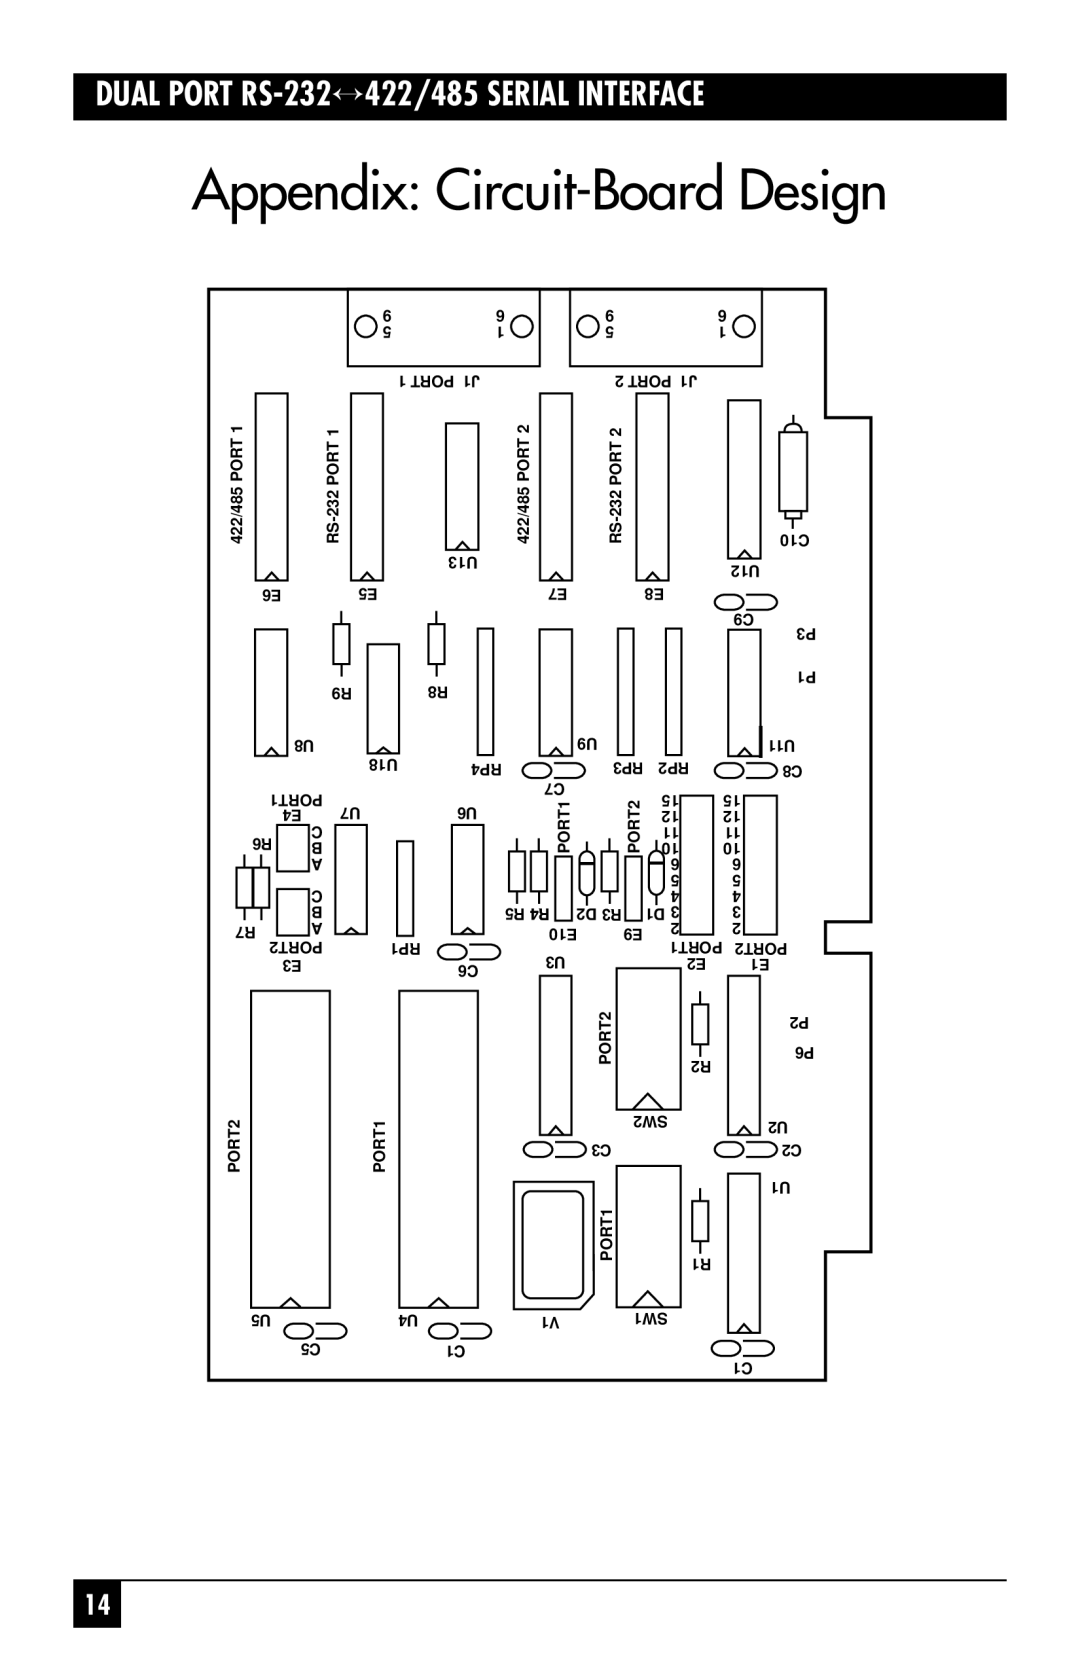 Black Box IC175C, RS-485, IC113C manual Appendix Circuit-Board Design, DUAL PORT RS-232↔ 422/485 SERIAL INTERFACE 